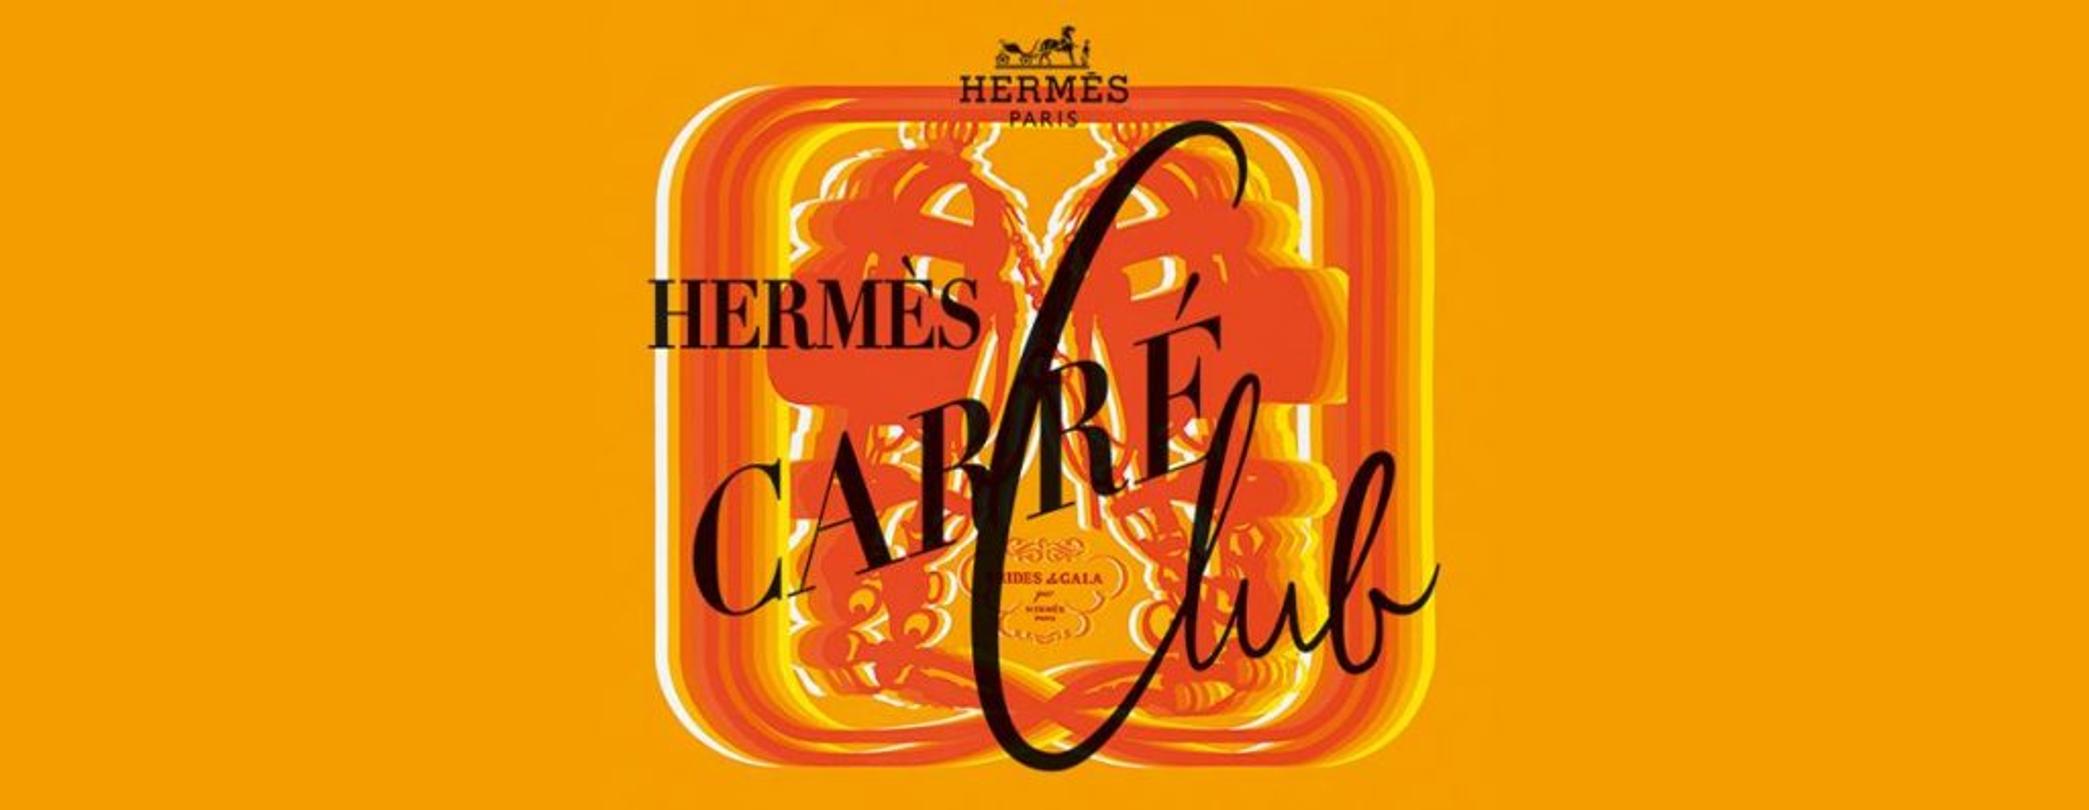 Hermès Carré Club